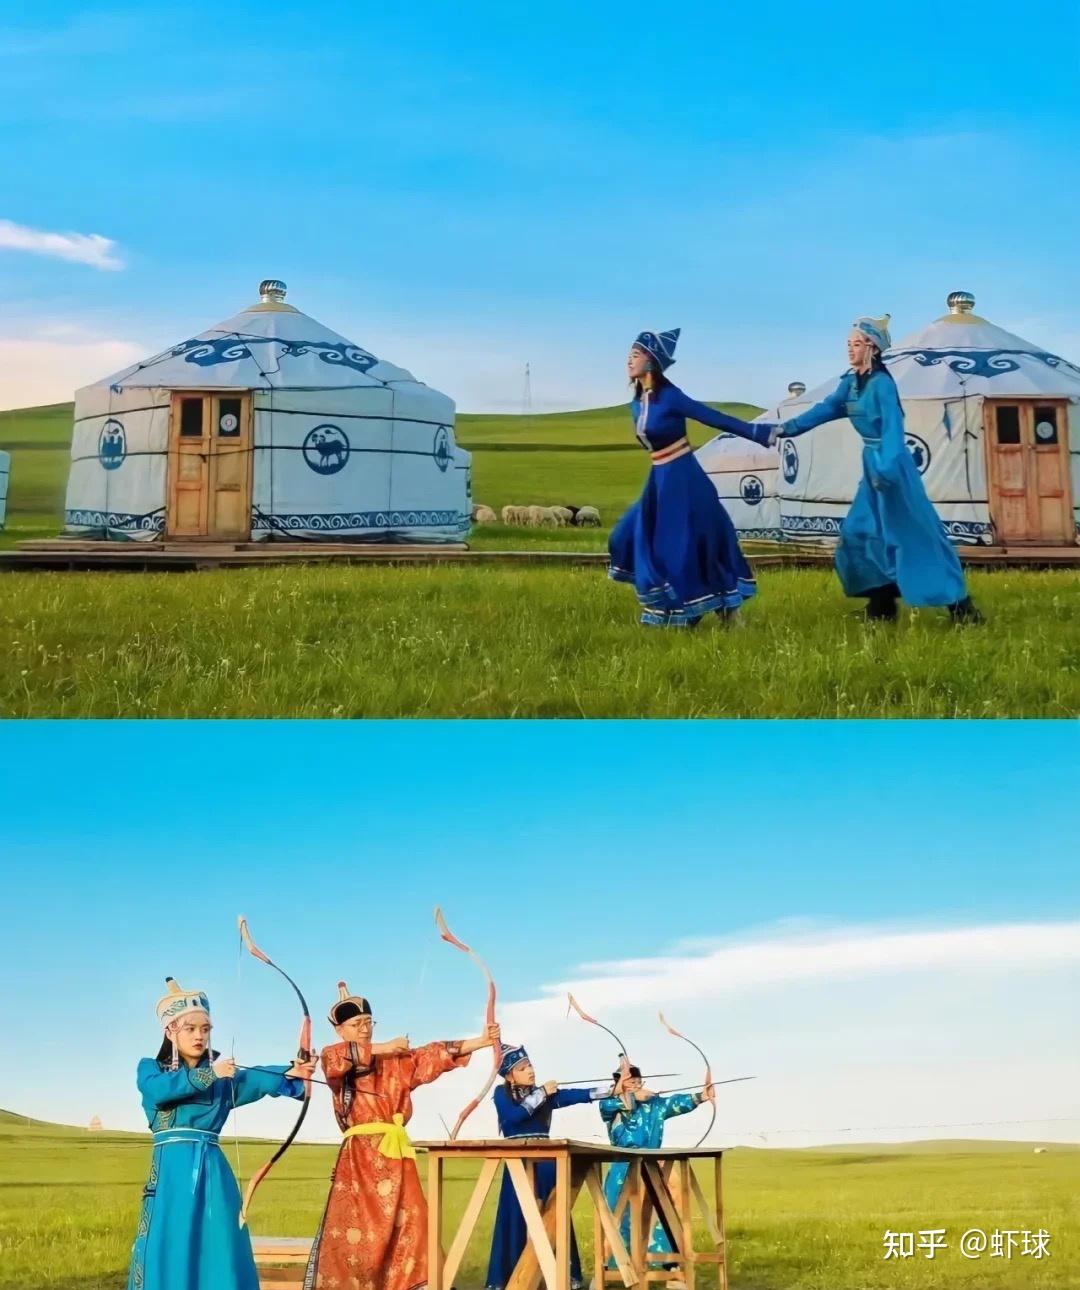 内蒙古自治区文化和旅游厅发布“内蒙古人游内蒙古”旅游线路